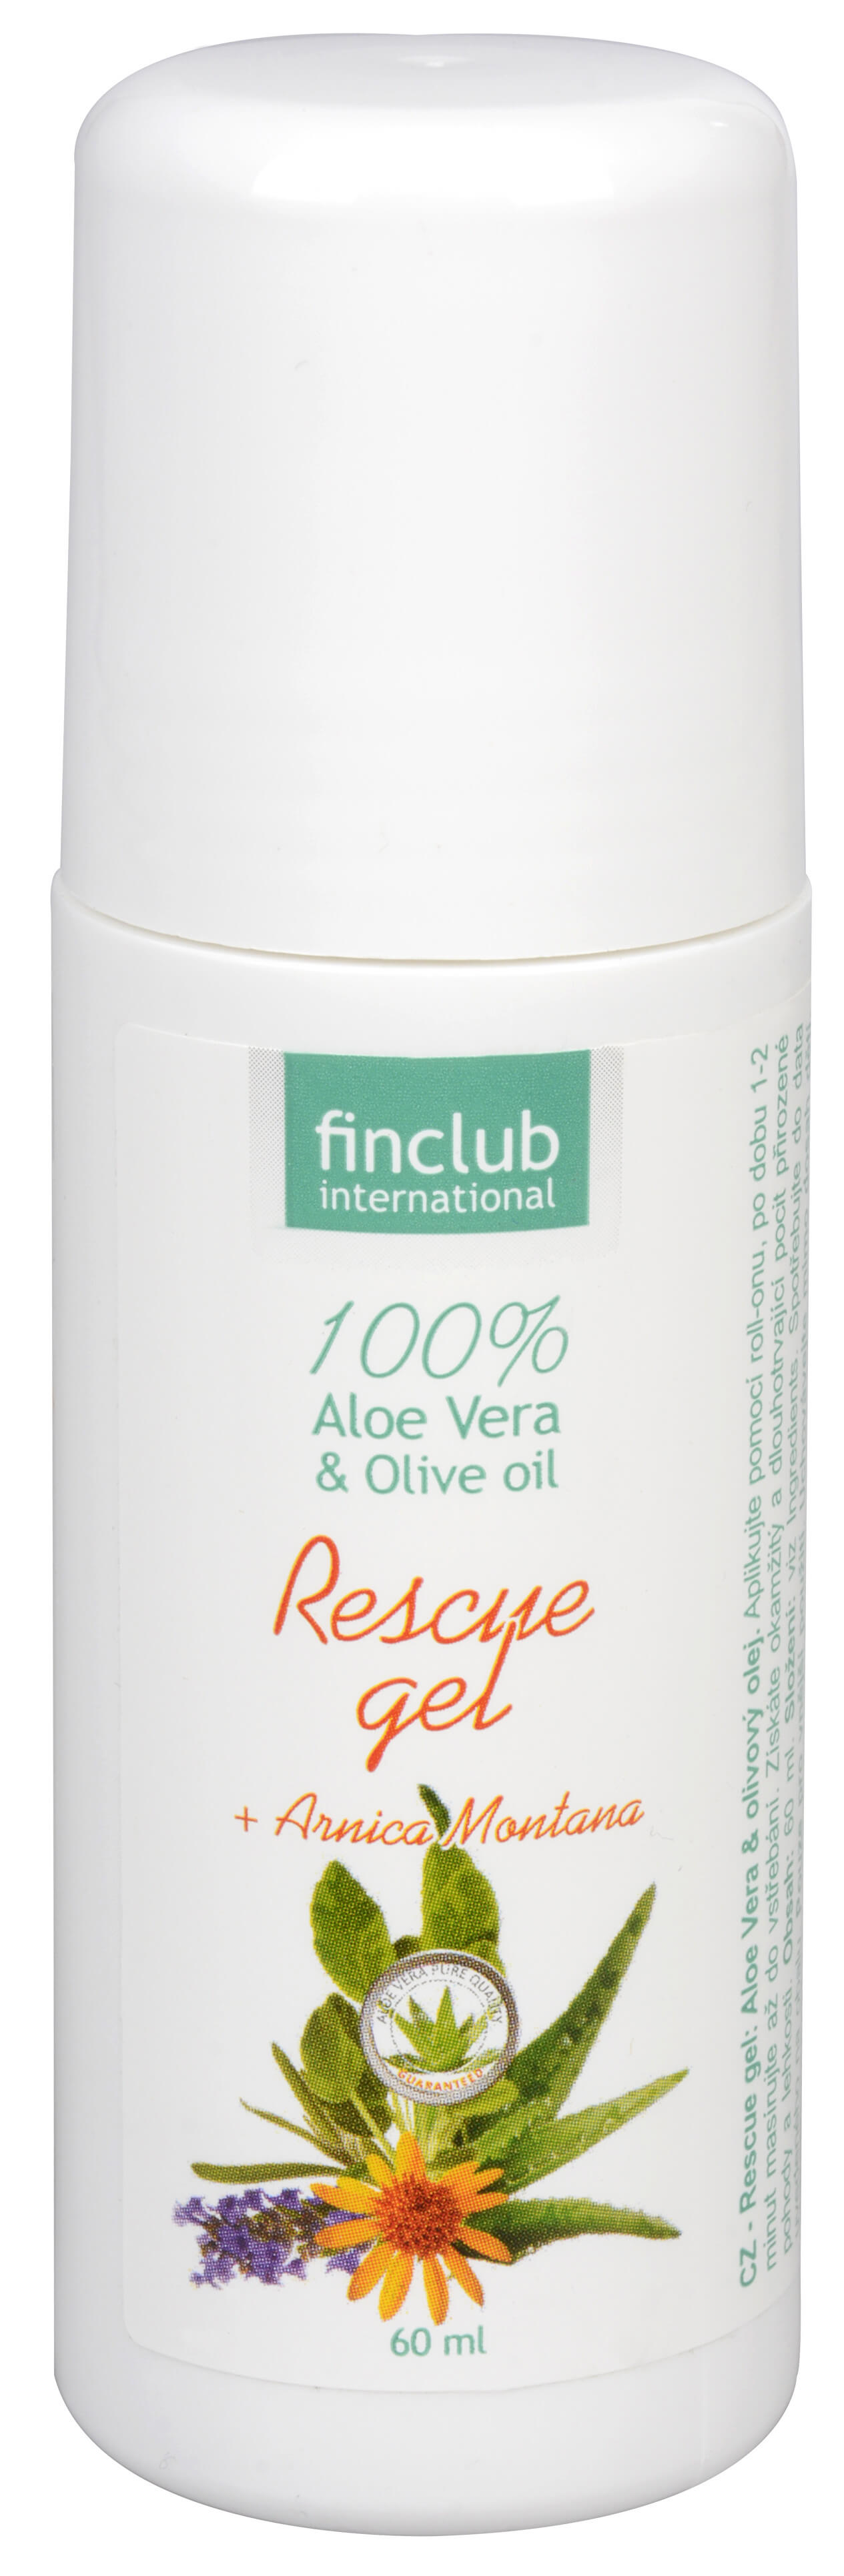 Finclub Aloe Vera Rescue gel 60 ml